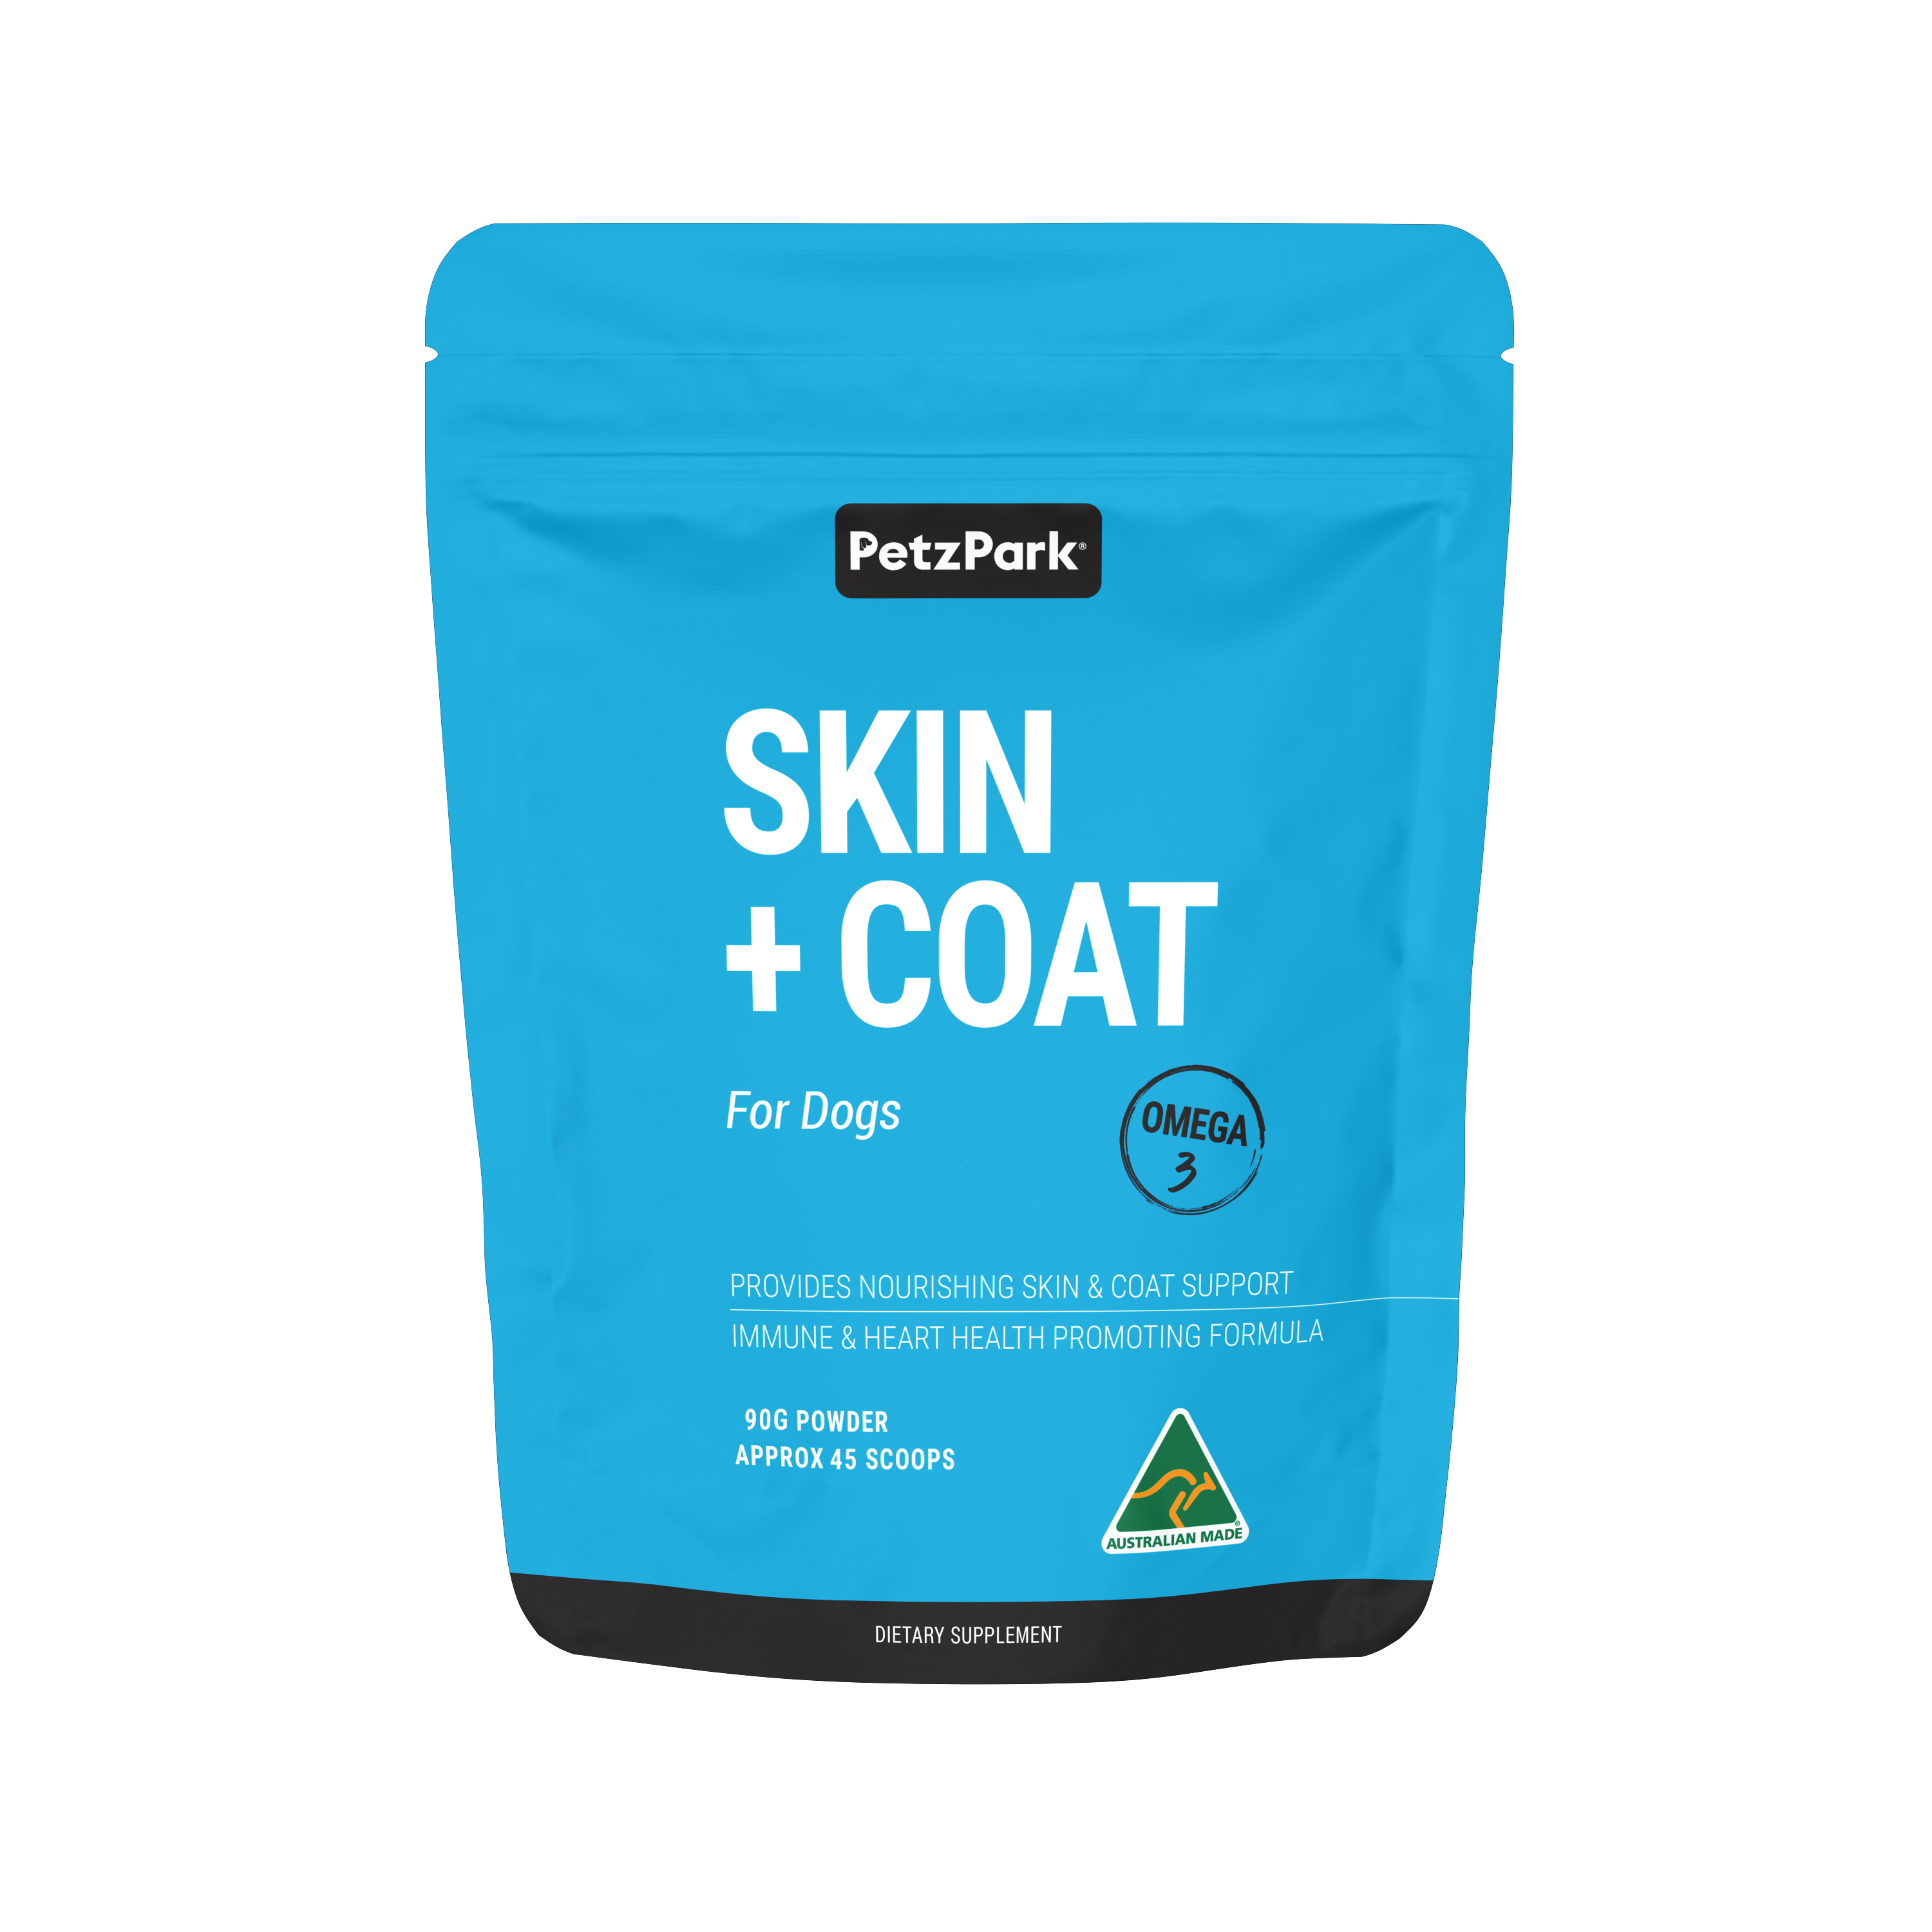 Petz Park Skin + Coat for Dogs, polvere per cani Omega-3 per pelle, pelo, cuore sani e altro ancora